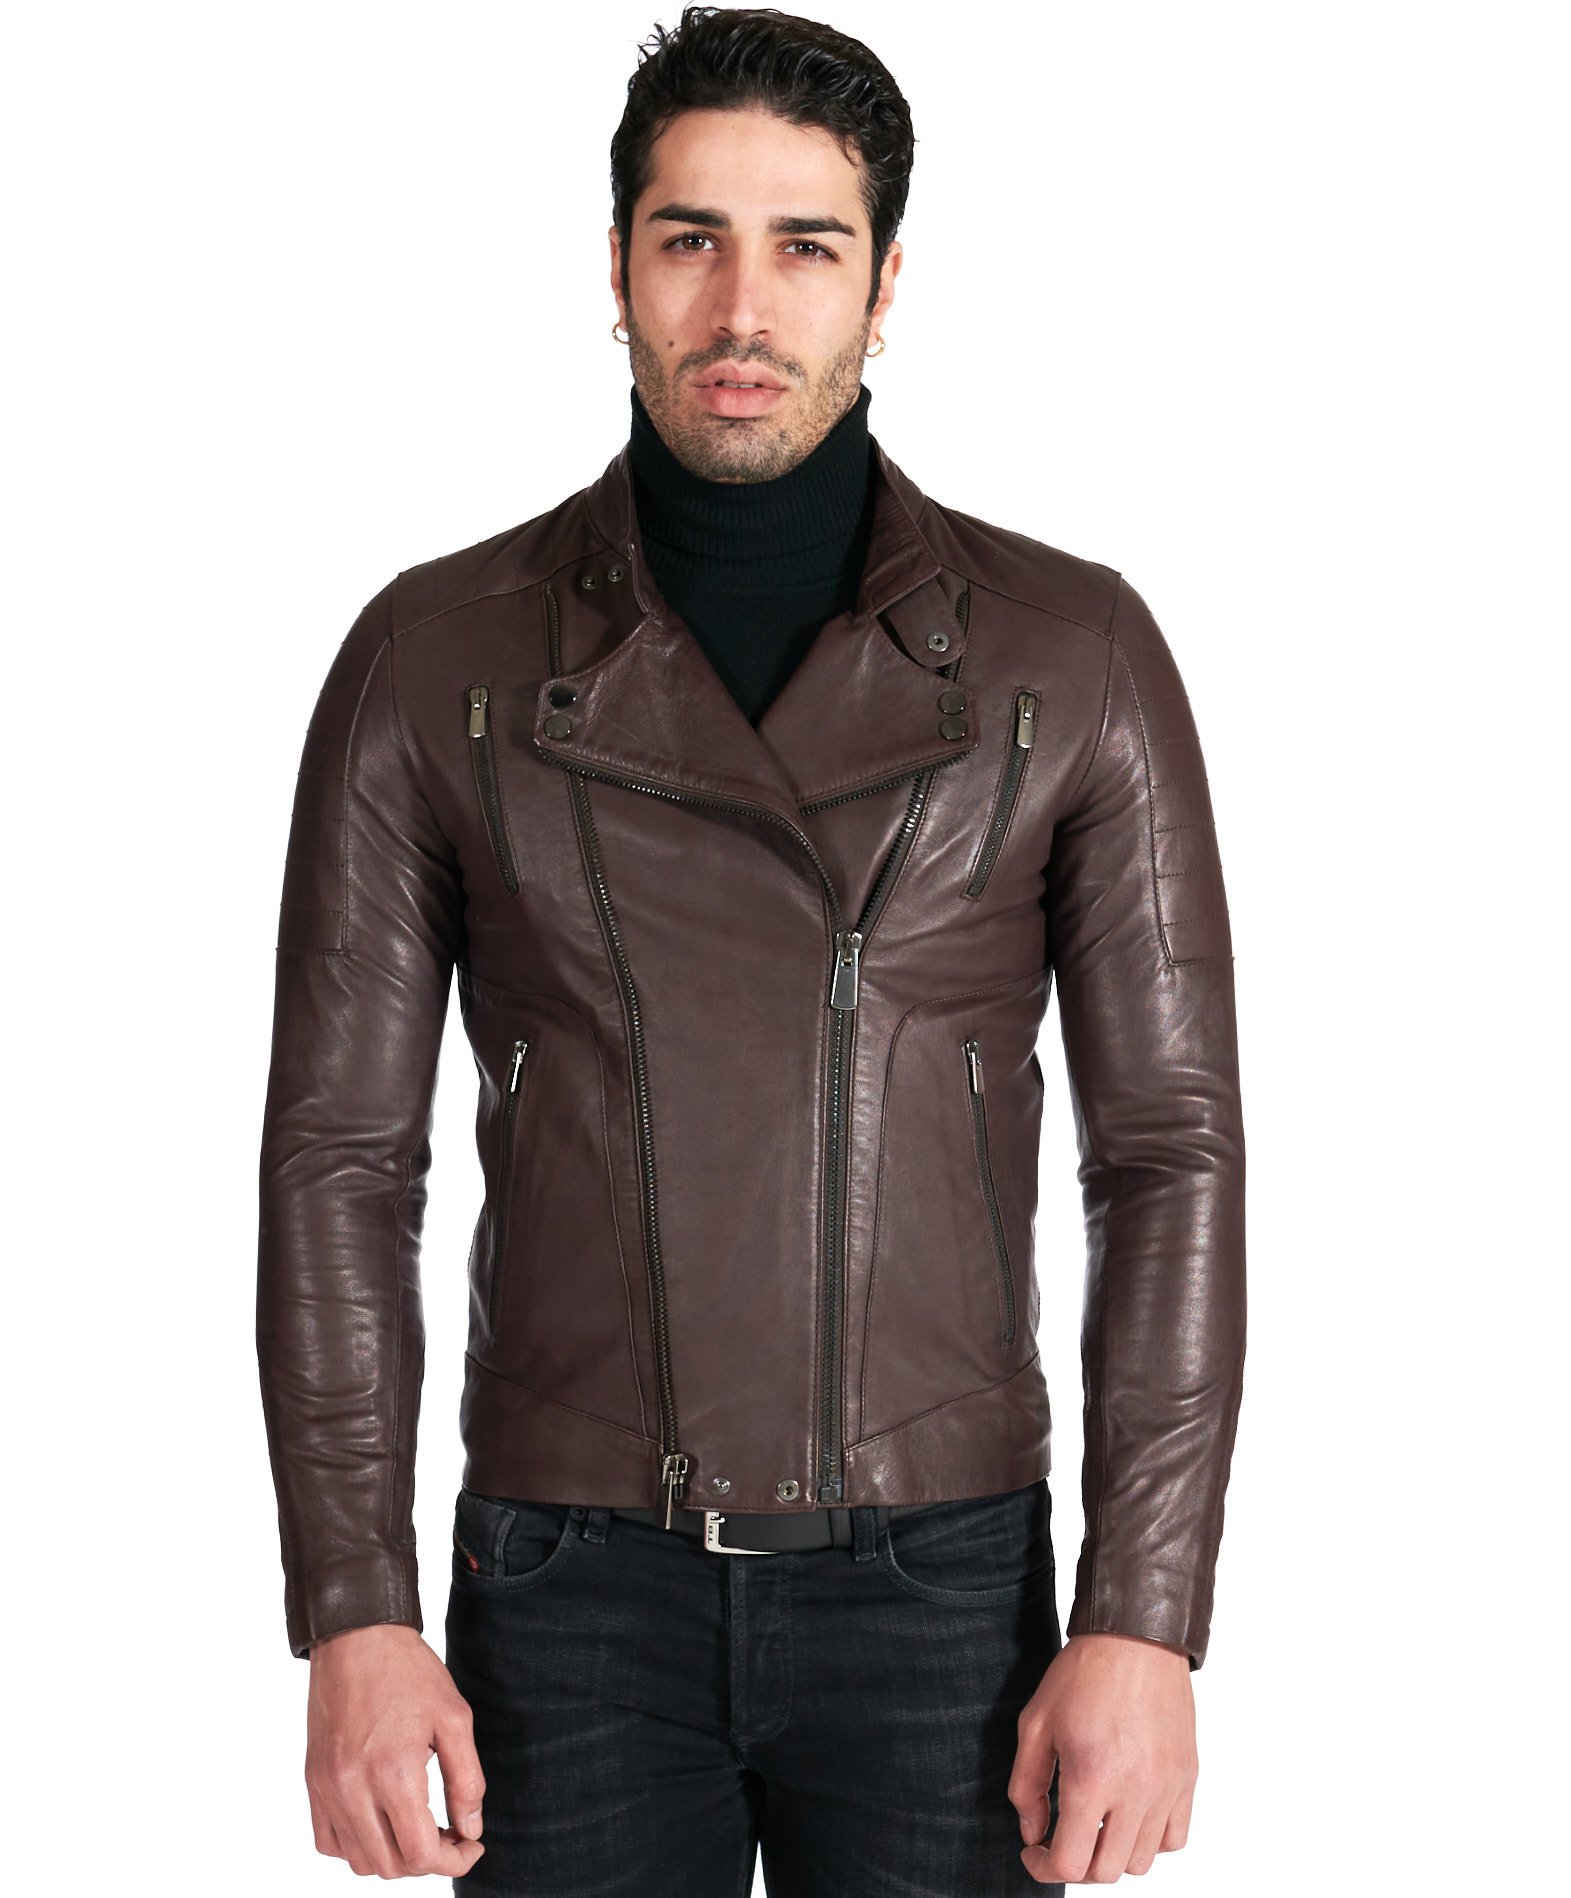 Men's Leather biker Jacket leather biker quilted yoke brown color Kevin ...